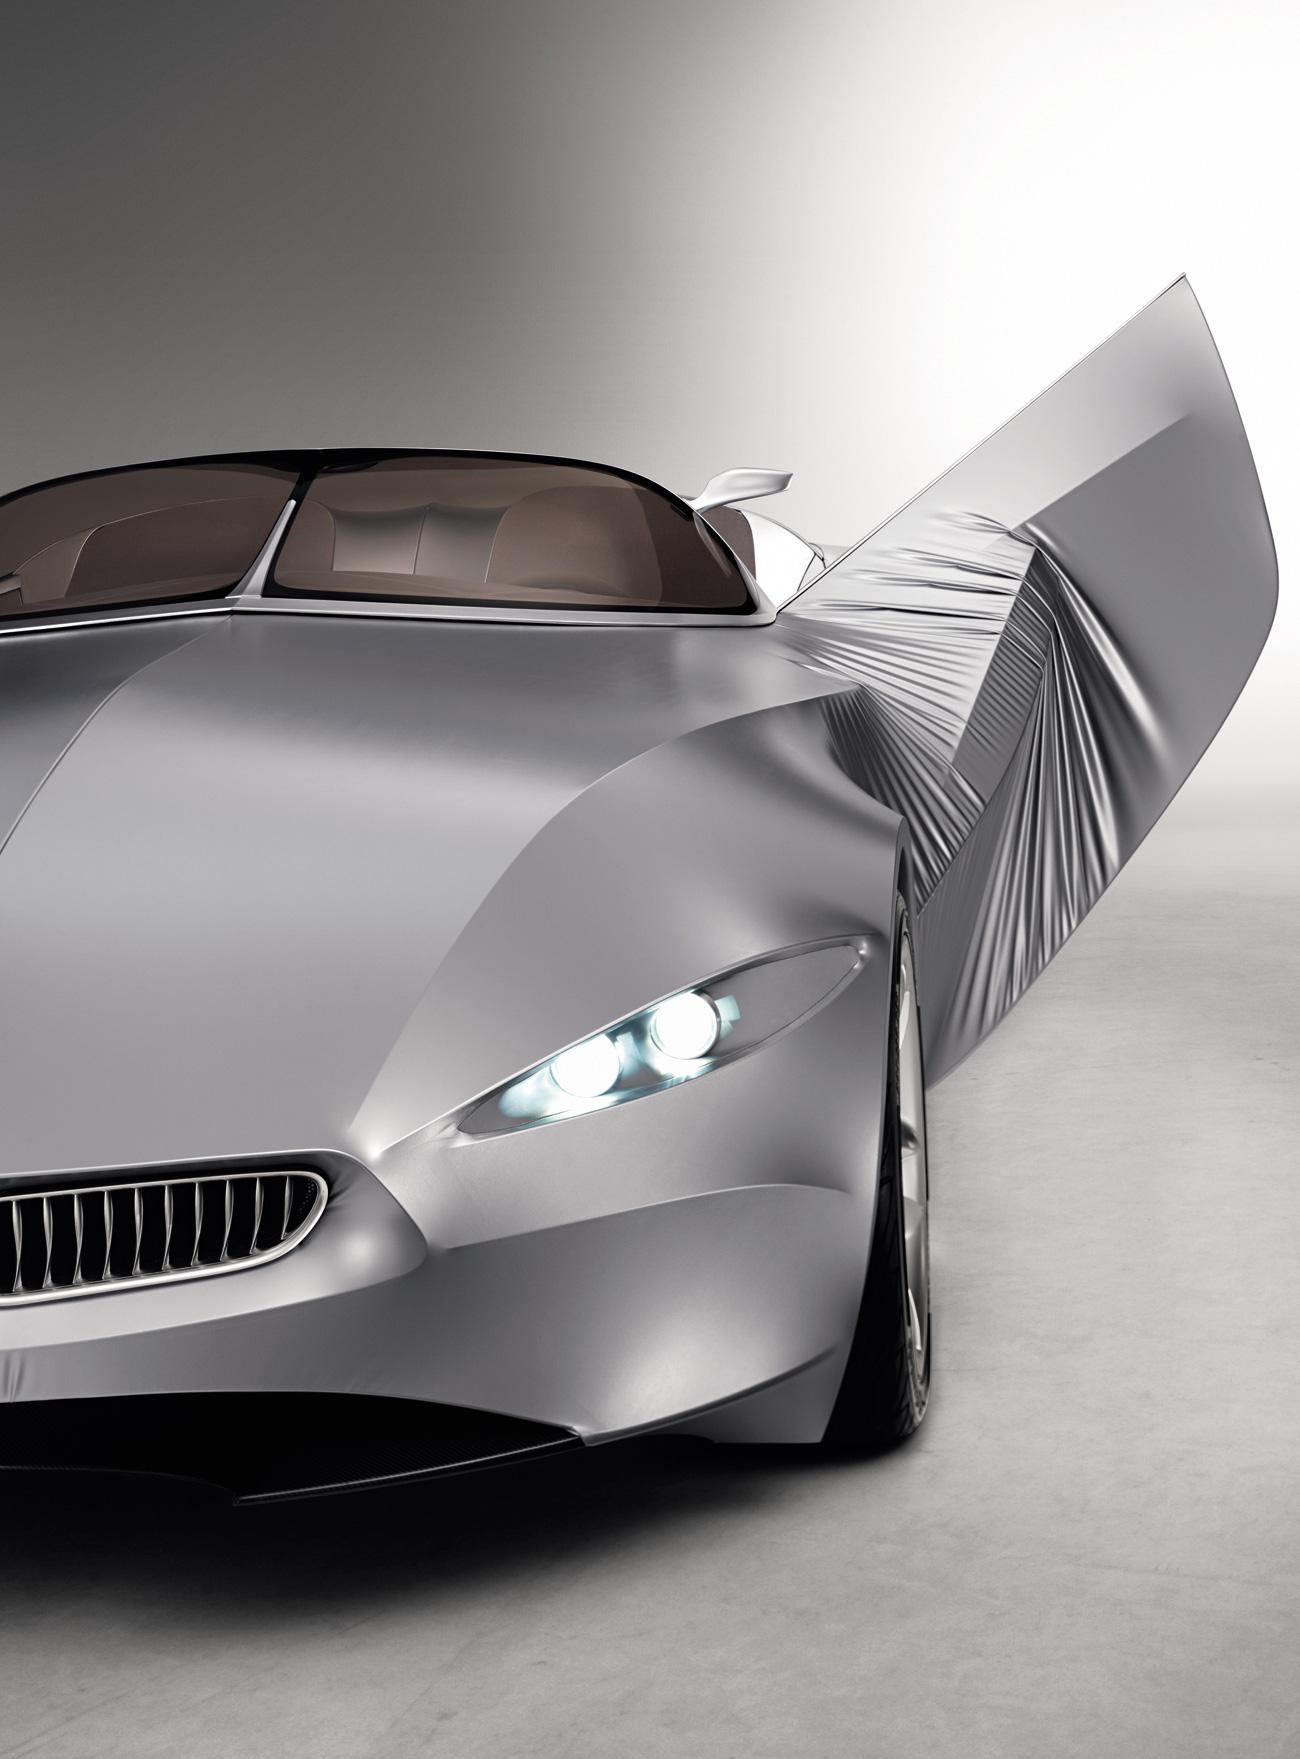 Появился новый концепт BMW Gina Concept